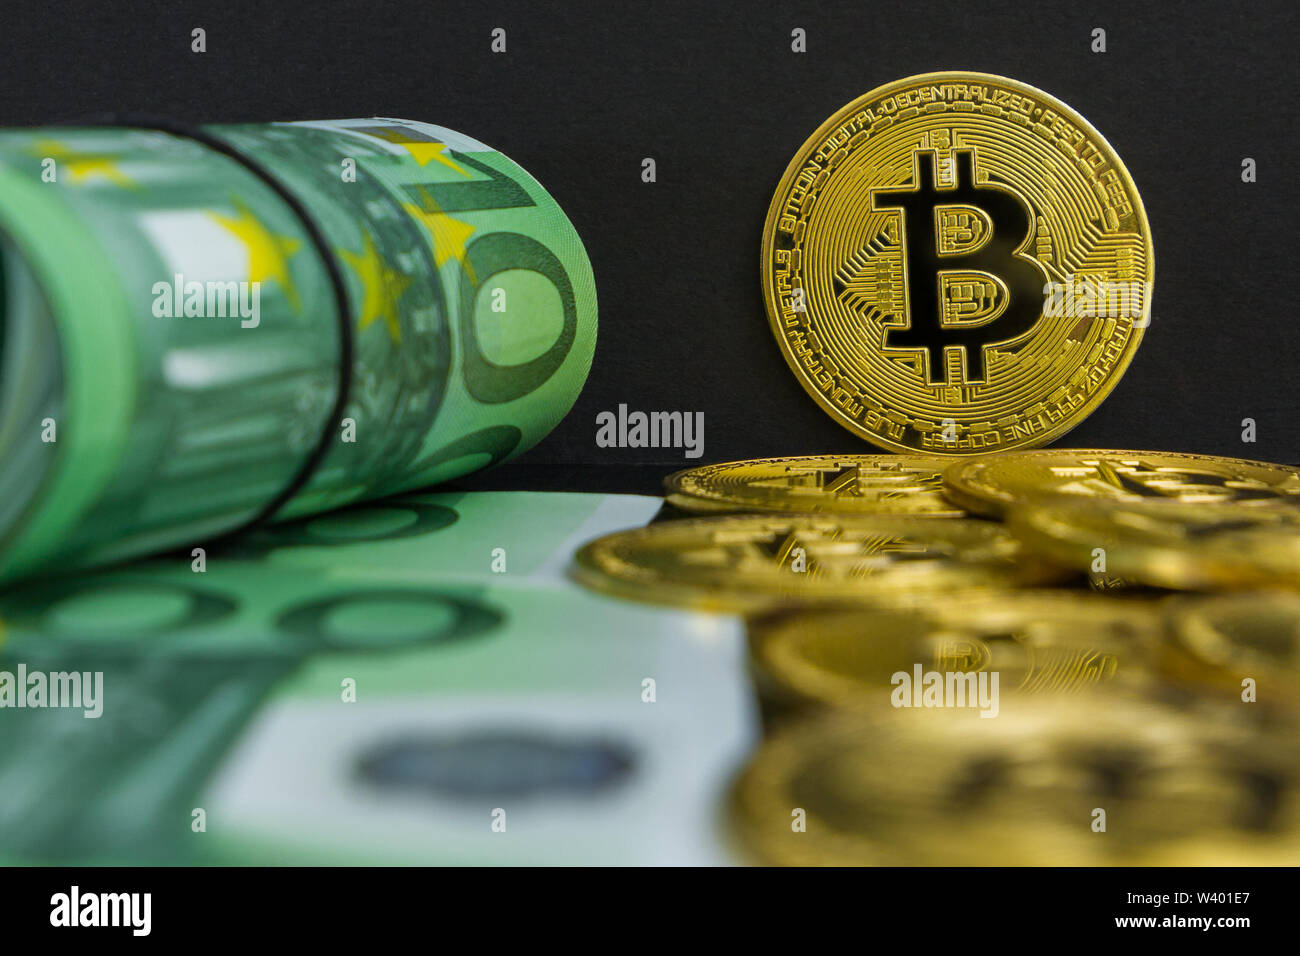 Vs Euro cryptocurrency bitcoin. Il y a une centaine de billets et pièces de monnaie btc golden big sur un fond noir. Bitcoin sur euro argent doré Banque D'Images